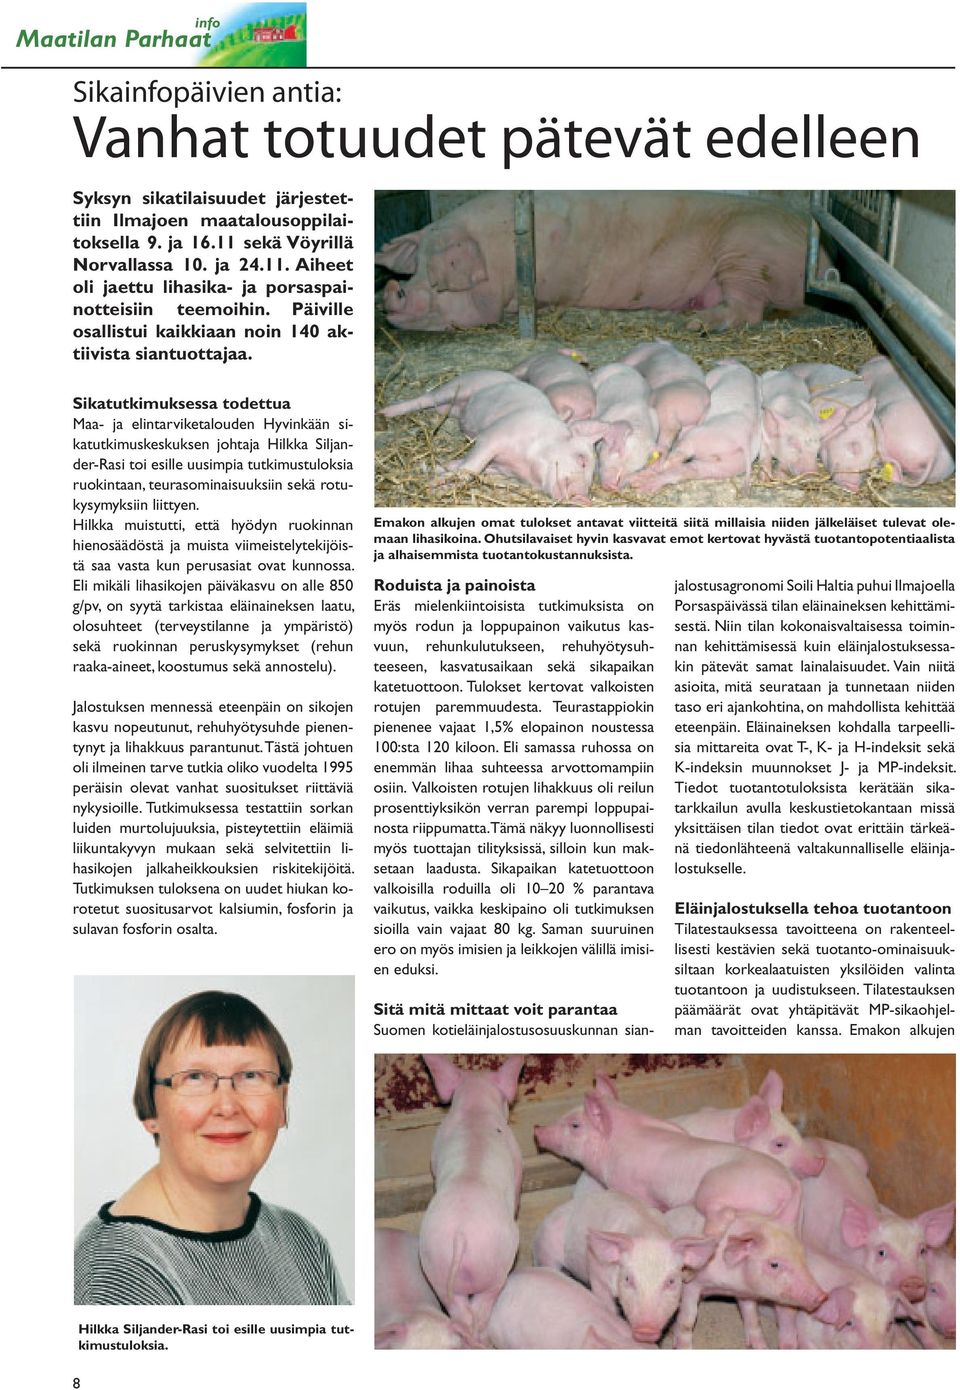 Sikatutkimuksessa todettua Maa- ja elintarviketalouden Hyvinkään sikatutkimuskeskuksen johtaja Hilkka Siljander-Rasi toi esille uusimpia tutkimustuloksia ruokintaan, teurasominaisuuksiin sekä